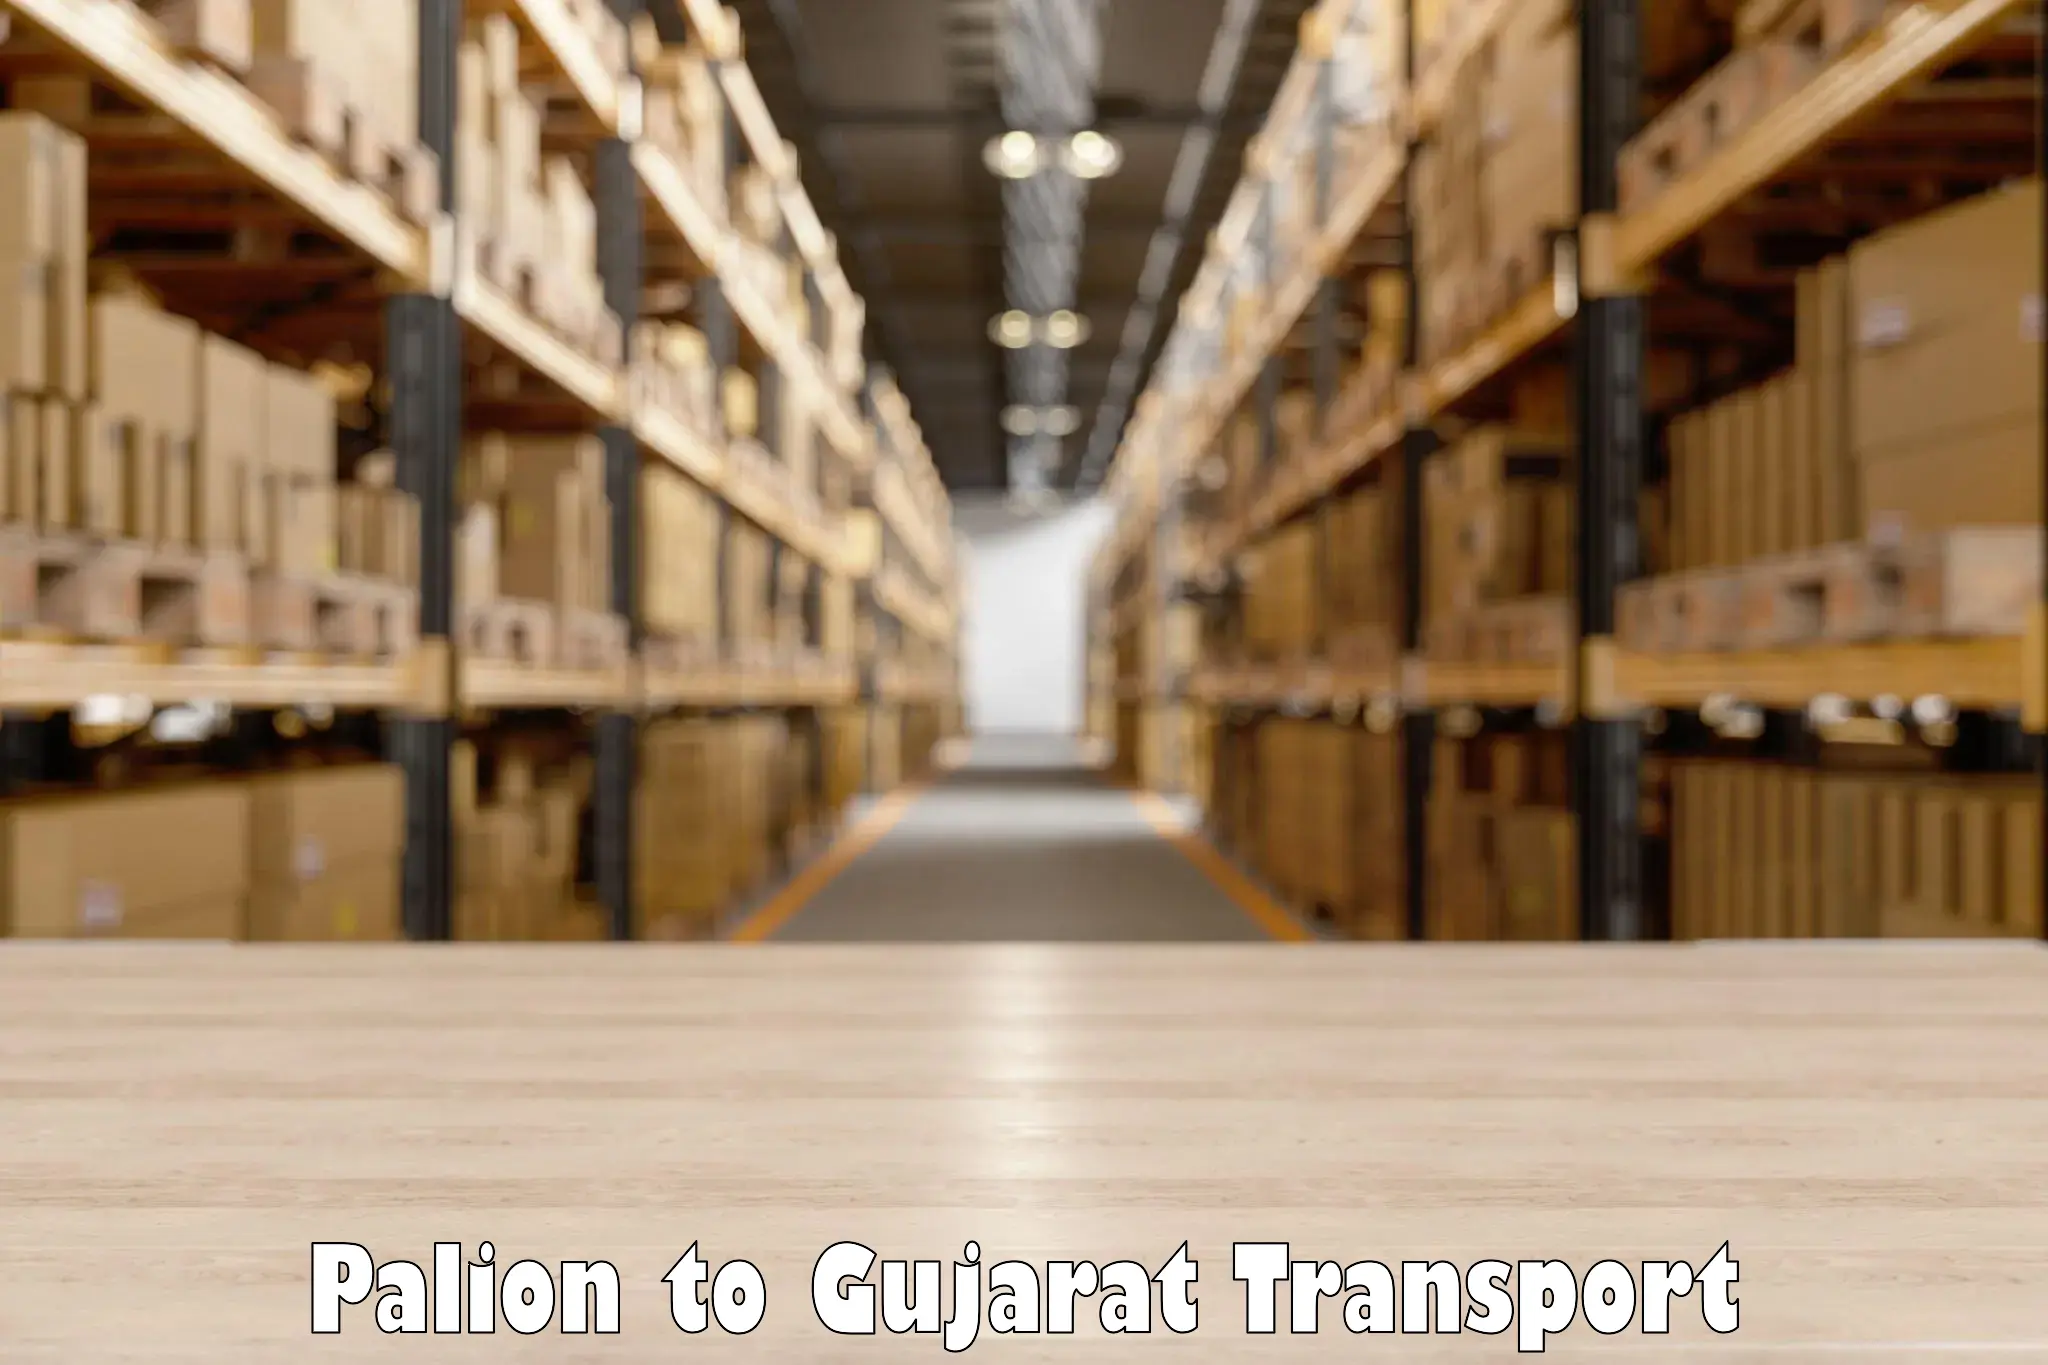 Transport in sharing Palion to IIT Gandhi Nagar